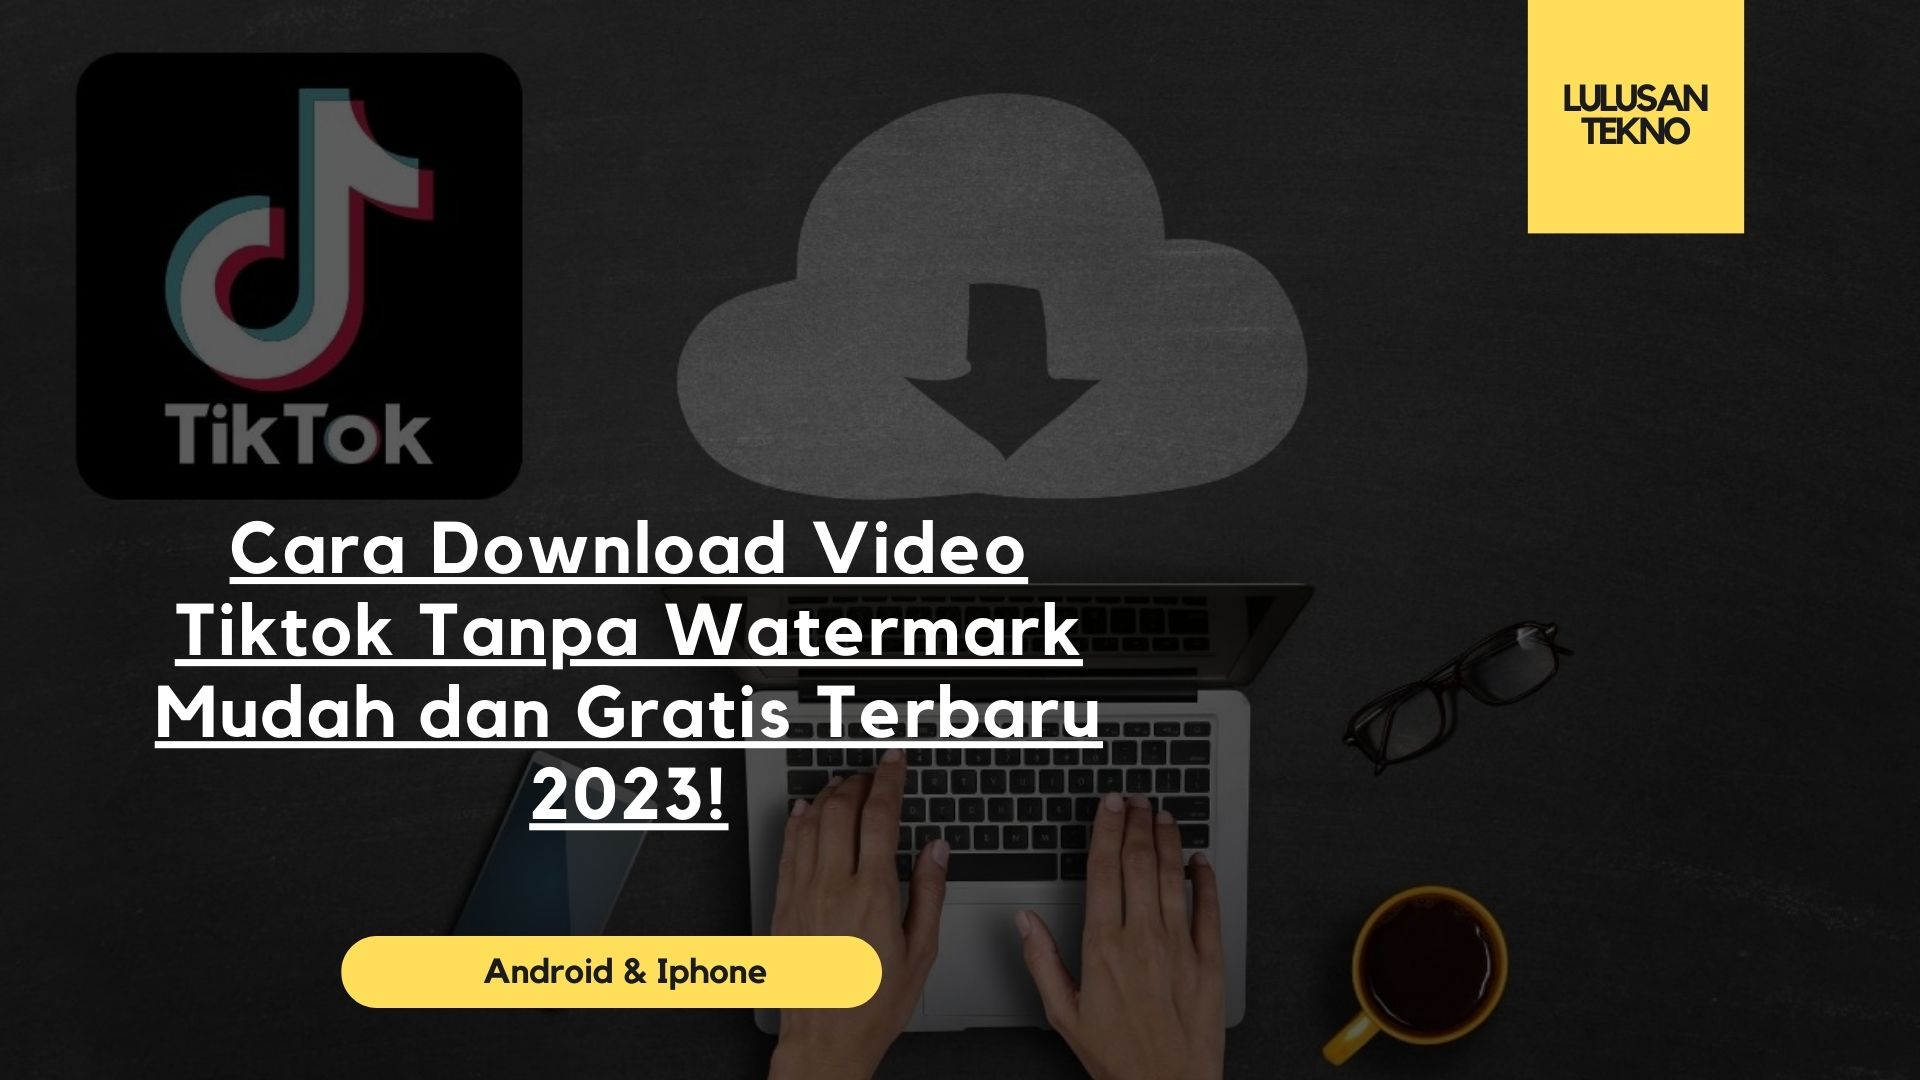 Cara Download Video Tiktok Tanpa Watermark Mudah dan Gratis Terbaru 2023!